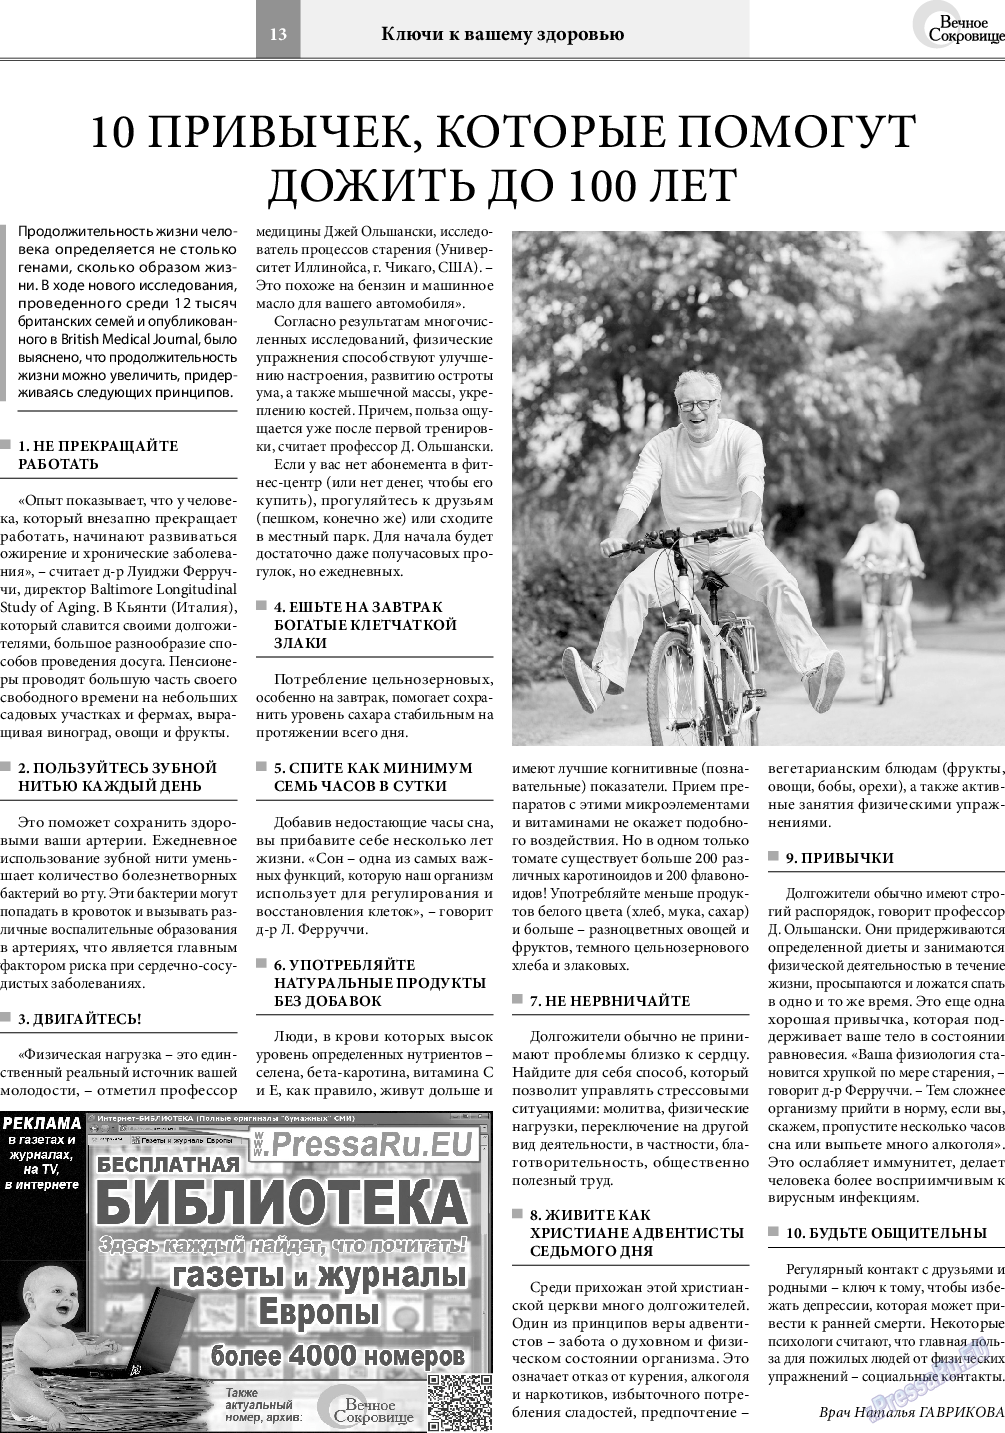 Вечное сокровище, газета. 2019 №3 стр.13